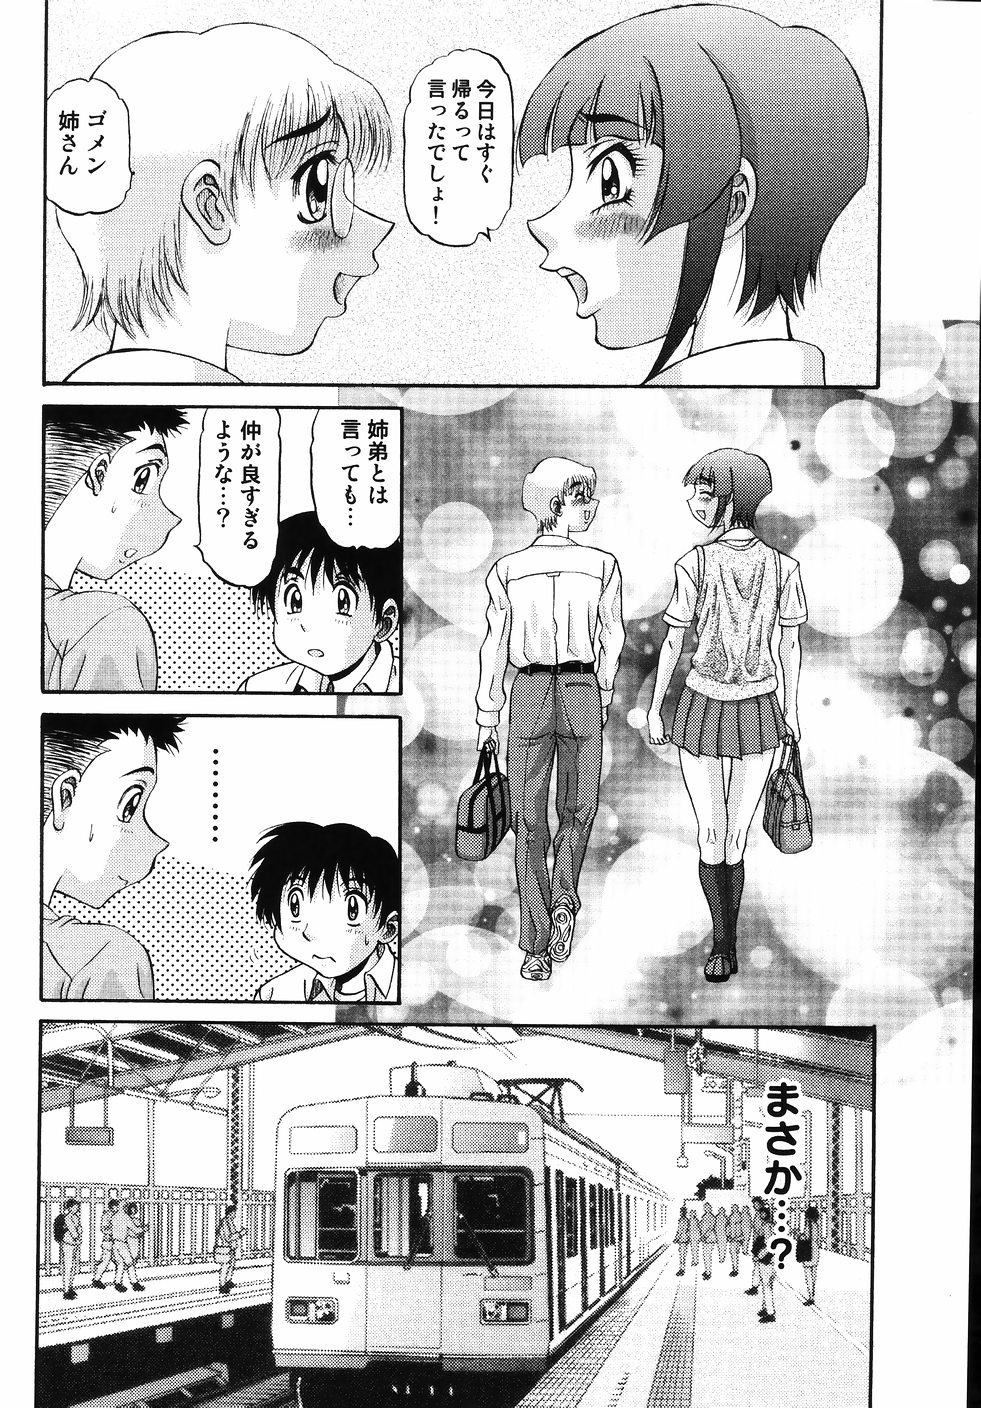 [PJ-1] Nozomi 2 page 10 full